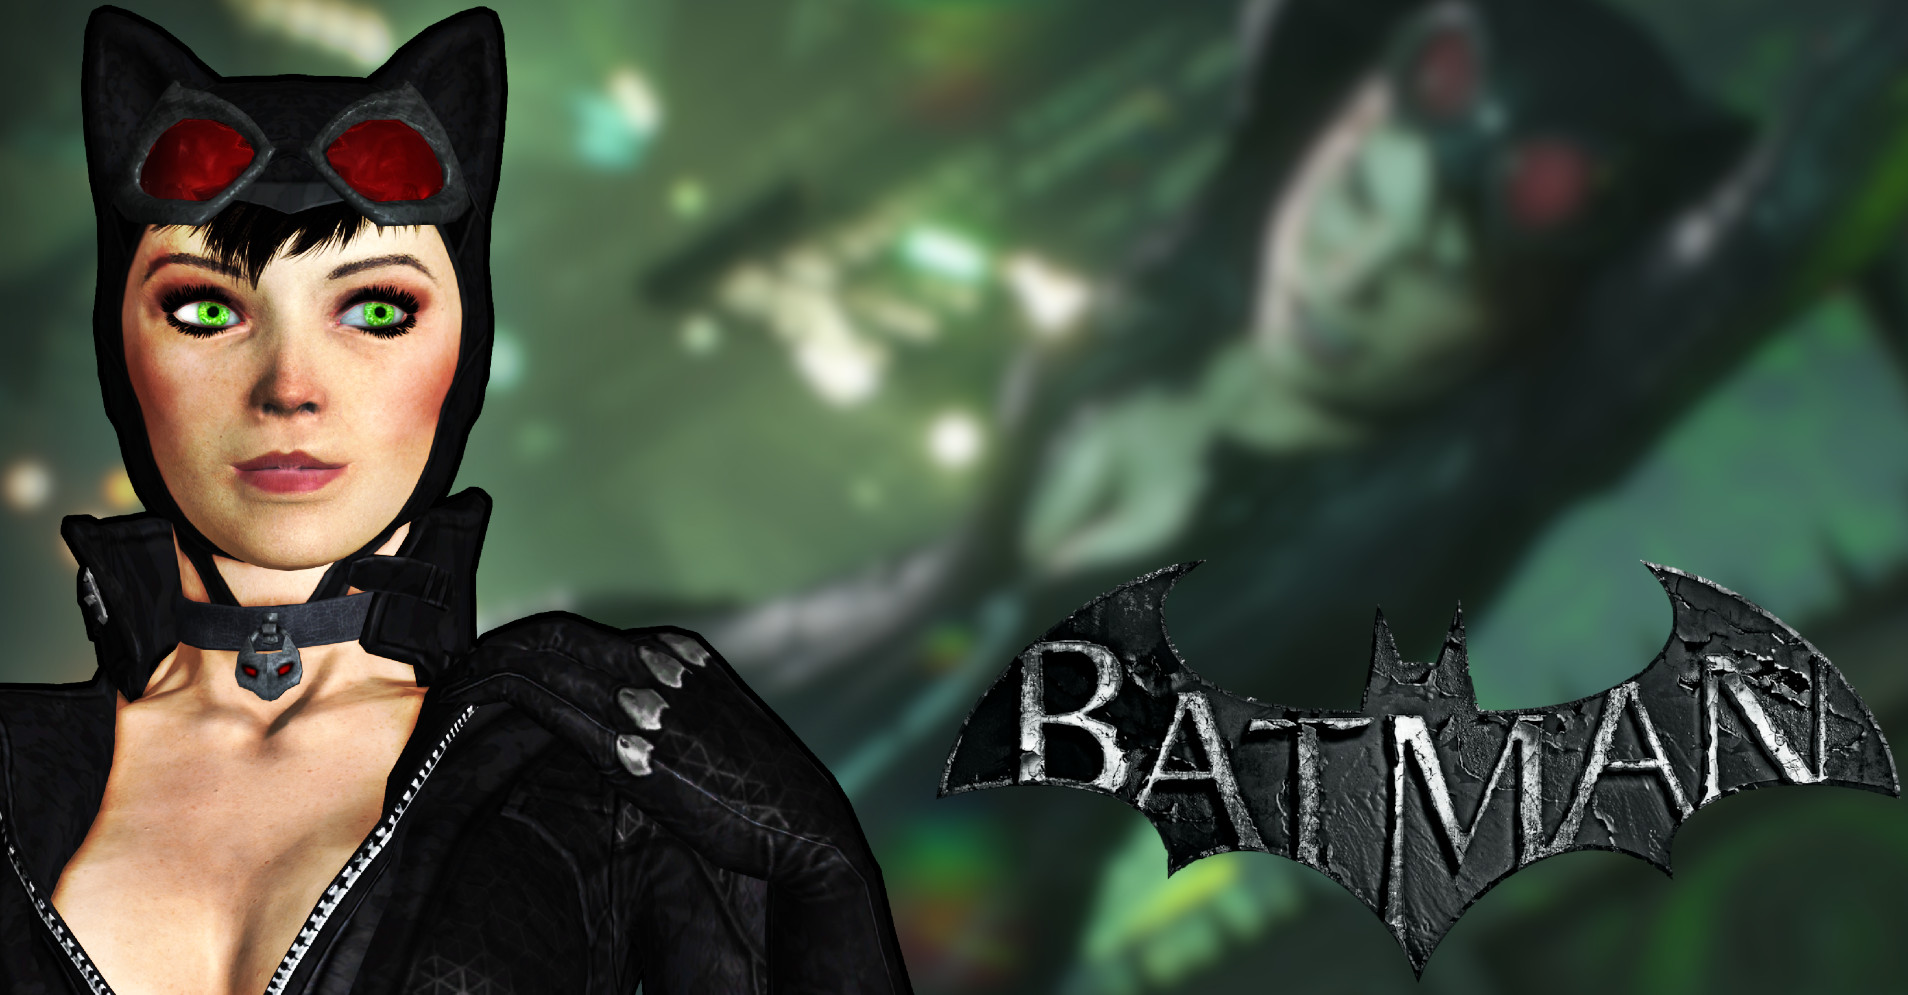 Catwoman(AK Face Texture) [Batman: Arkham City] [Mods]